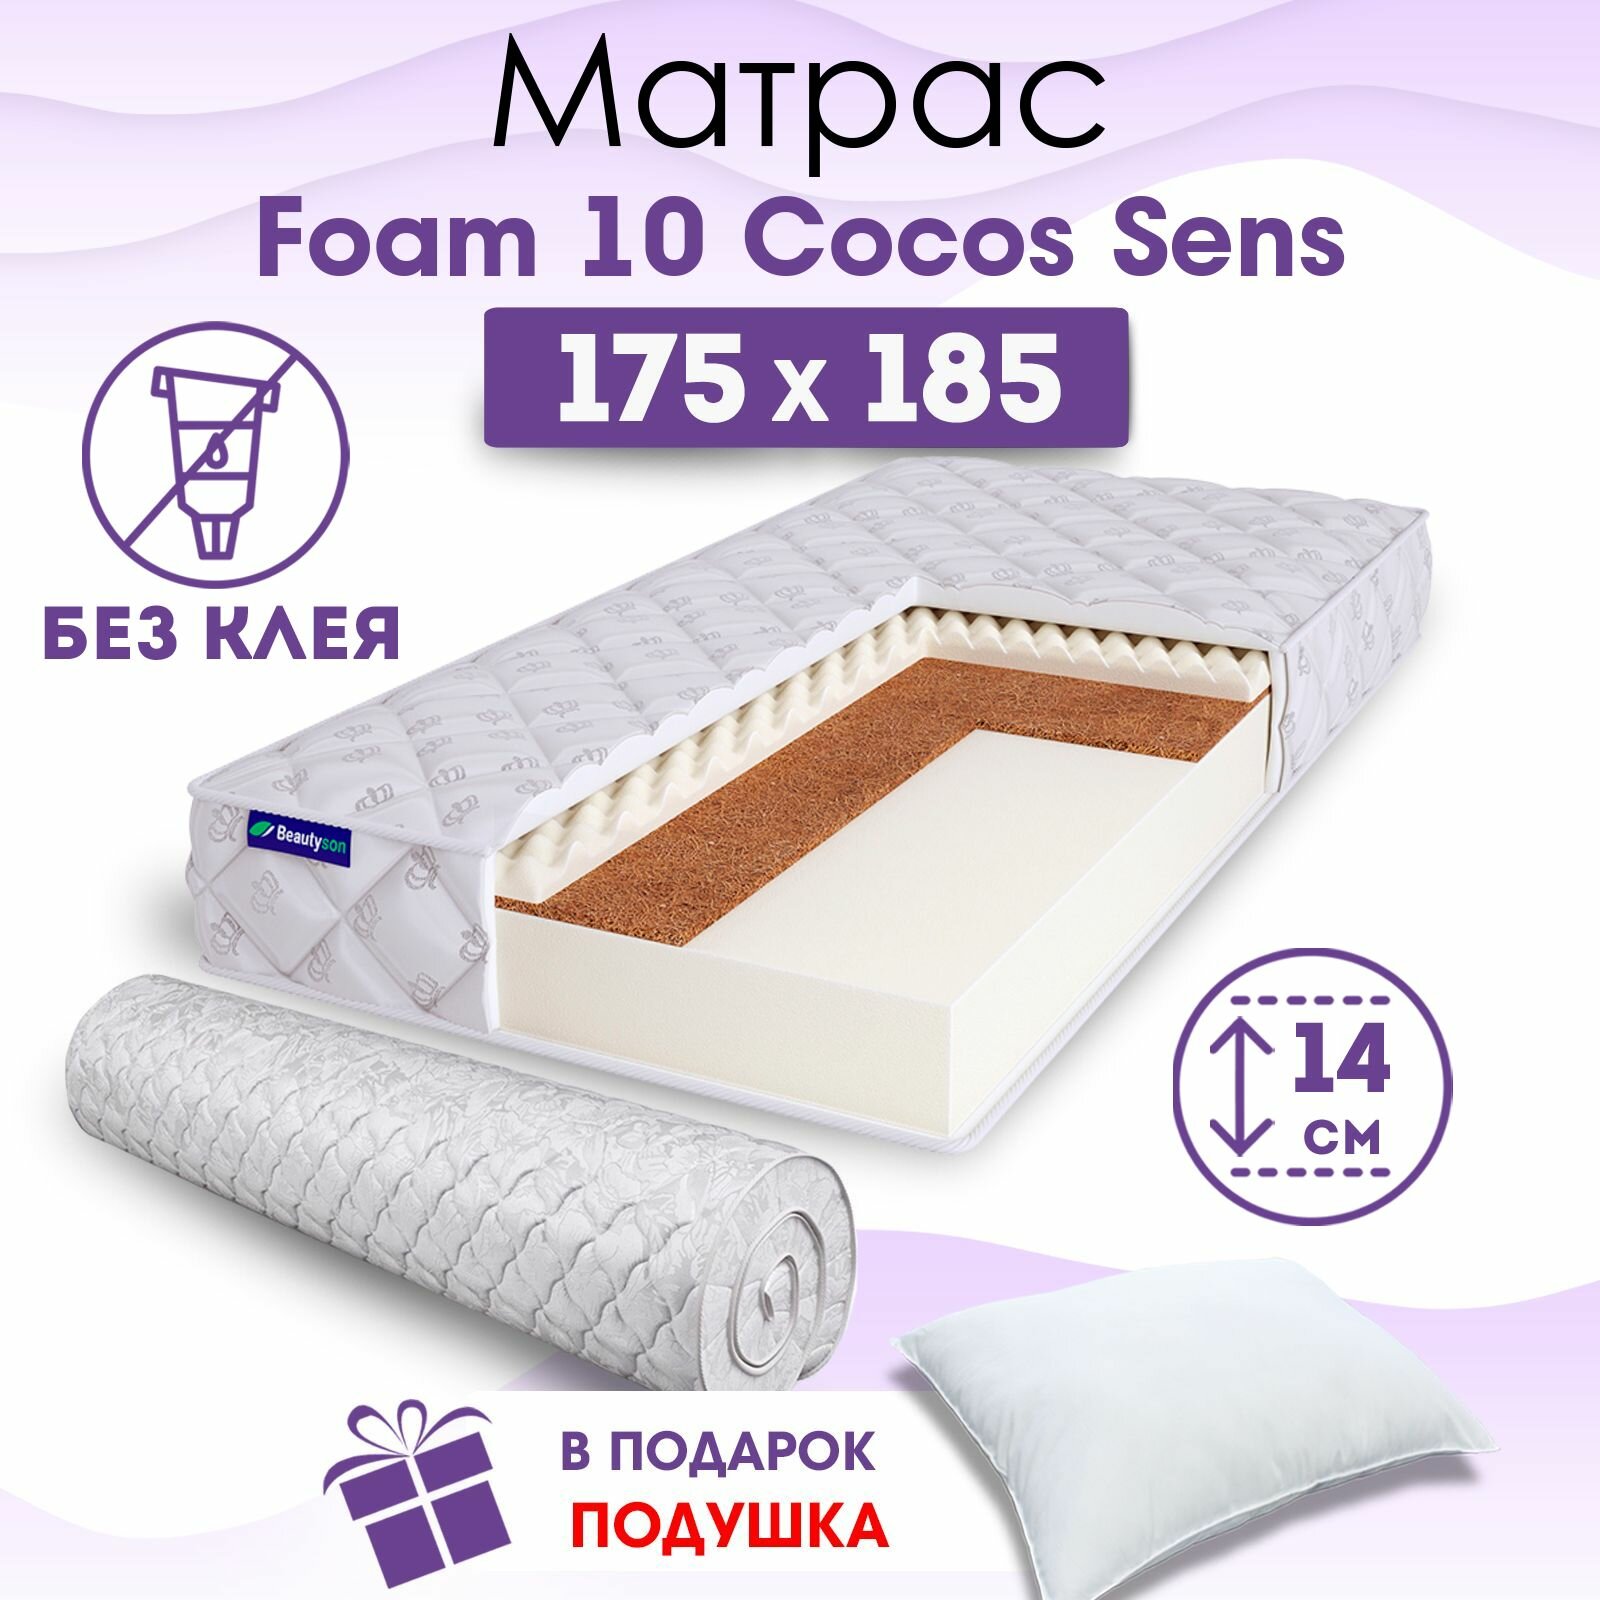 Ортопедический матрас Beautyson Foam 10 Cocos Sens без клея, 175х185, 14 см, беспружинный, двухспальный, на кровать, для дивана, умеренно мягкий